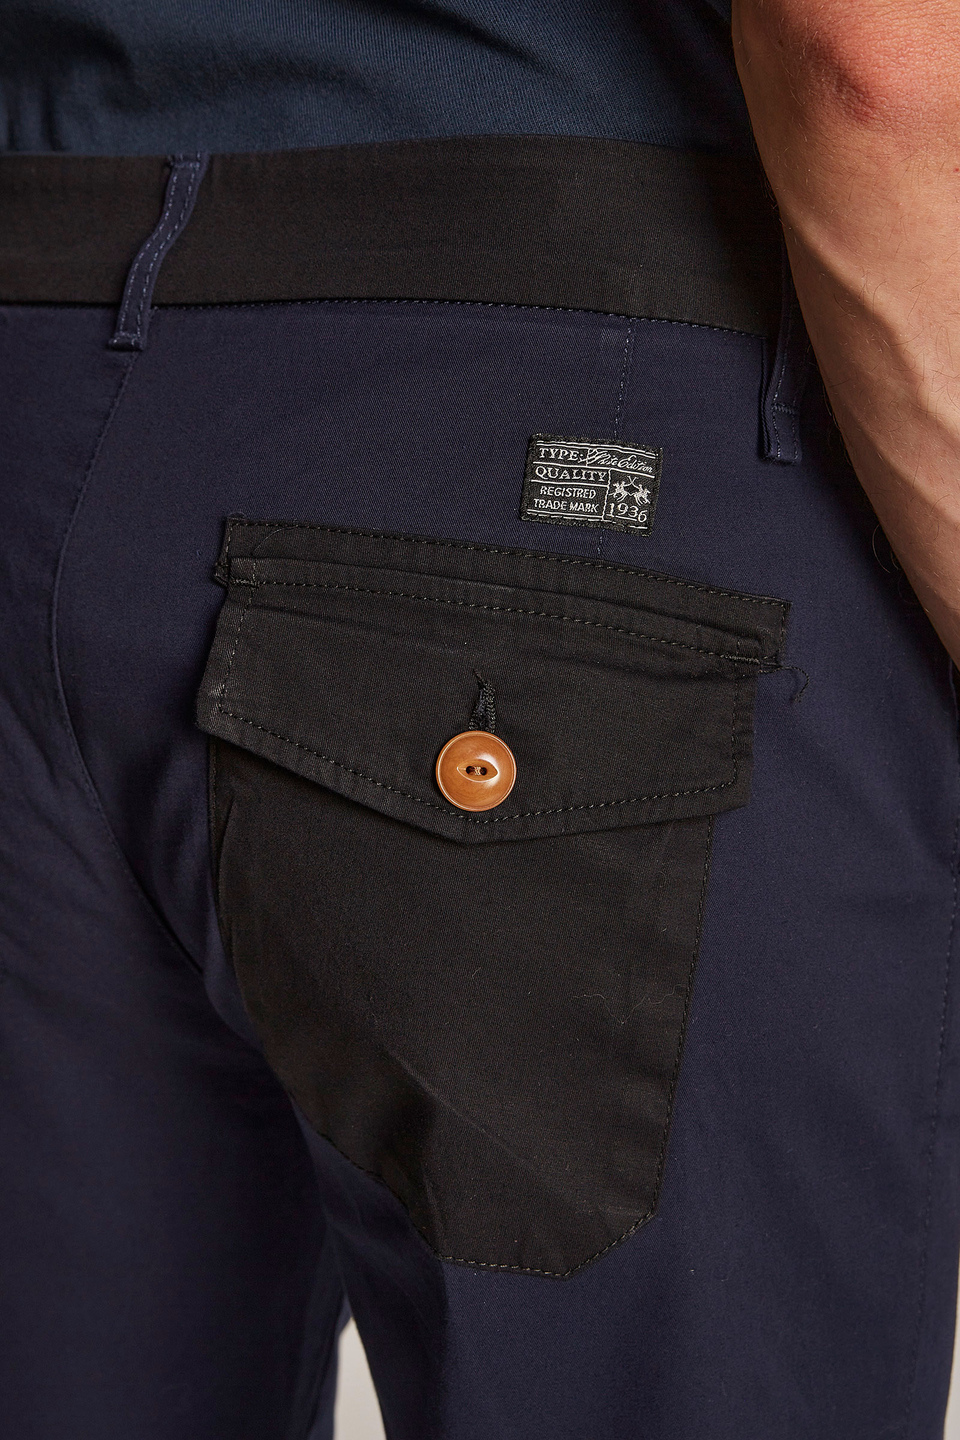 Pantalone da uomo in cotone misto lino regular fit | La Martina - Official Online Shop